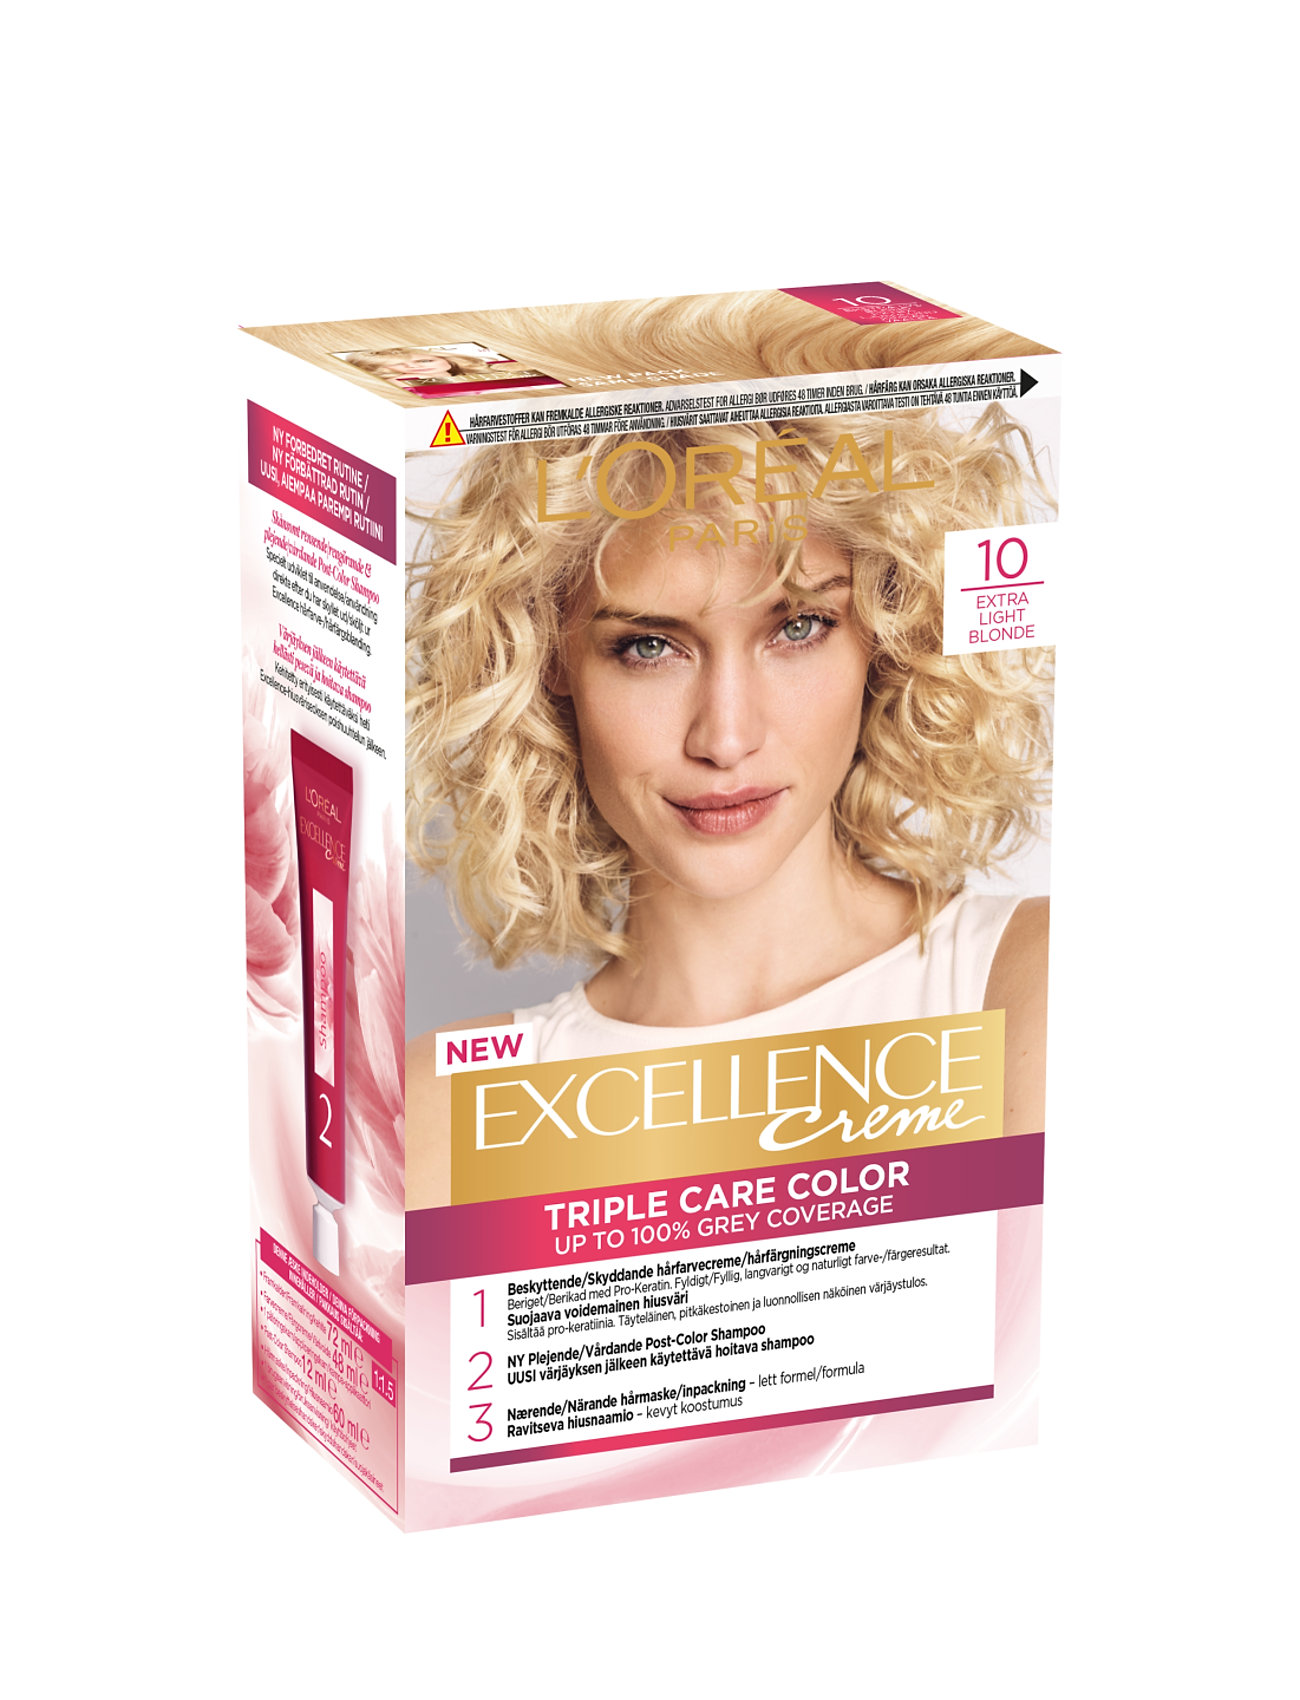 L'oréal Paris Excellence Color Cream Kit 10 Extra Light Blonde Beauty Women Hair Care Color Treatments Nude L'Oréal Paris